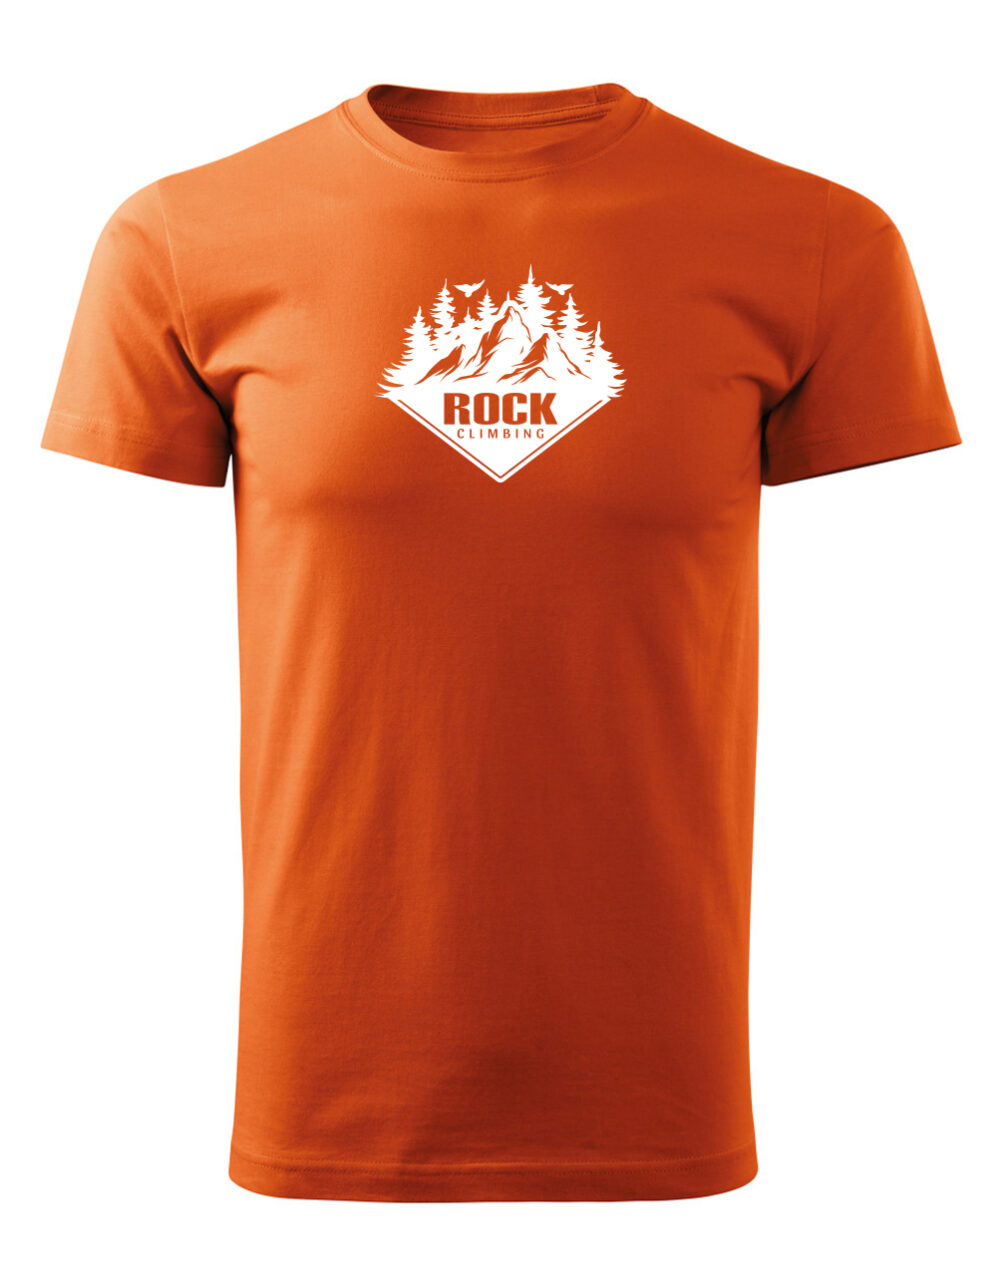 Pánské tričko s potiskem Rock climbing oranžová